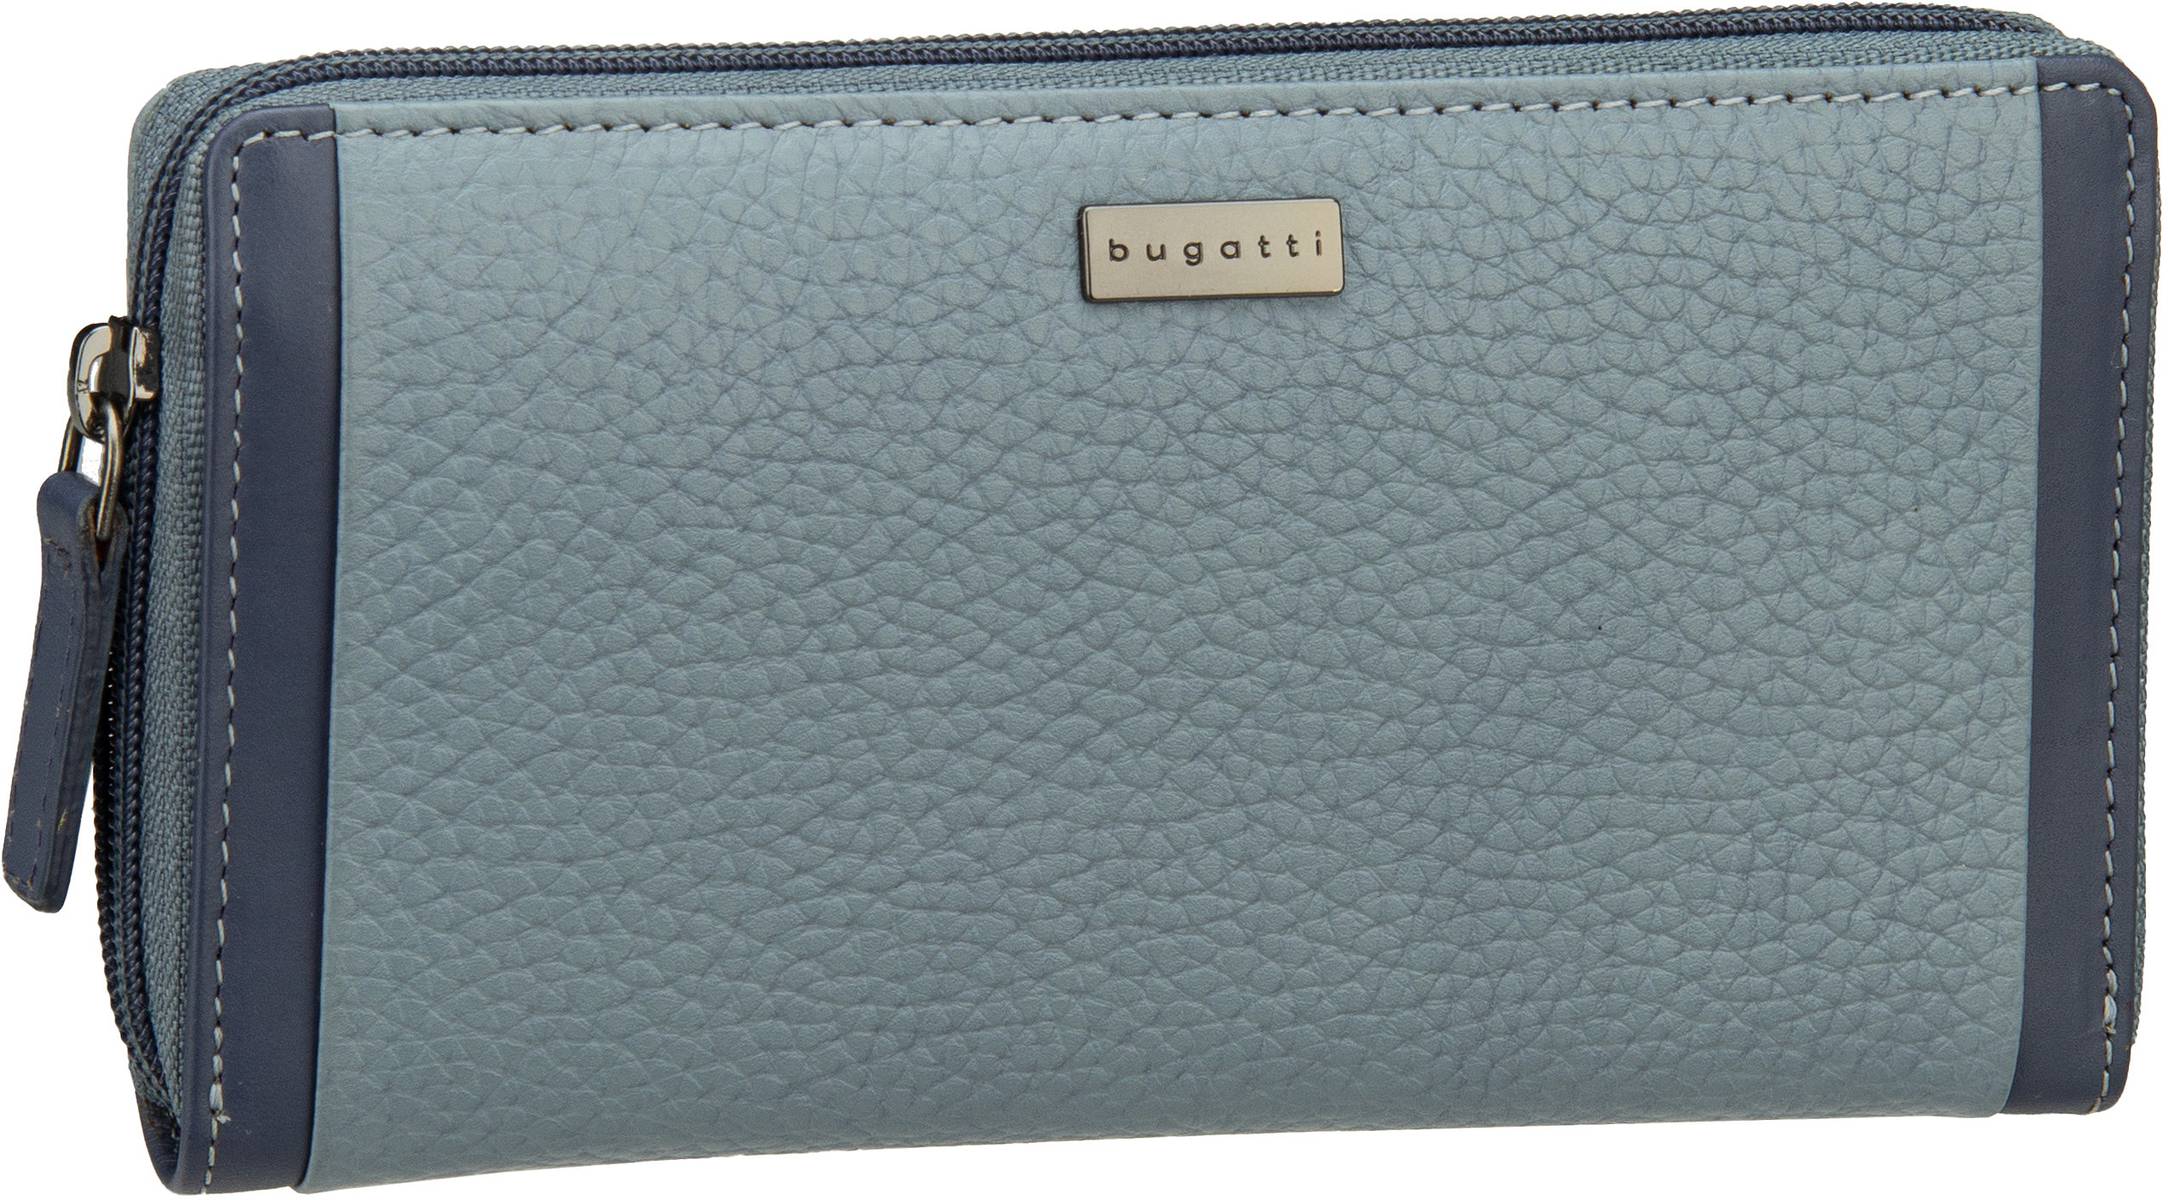 Bugatti Sina Ladies Long Zip Wallet  in Blau (0.5 Liter), Geldbörse